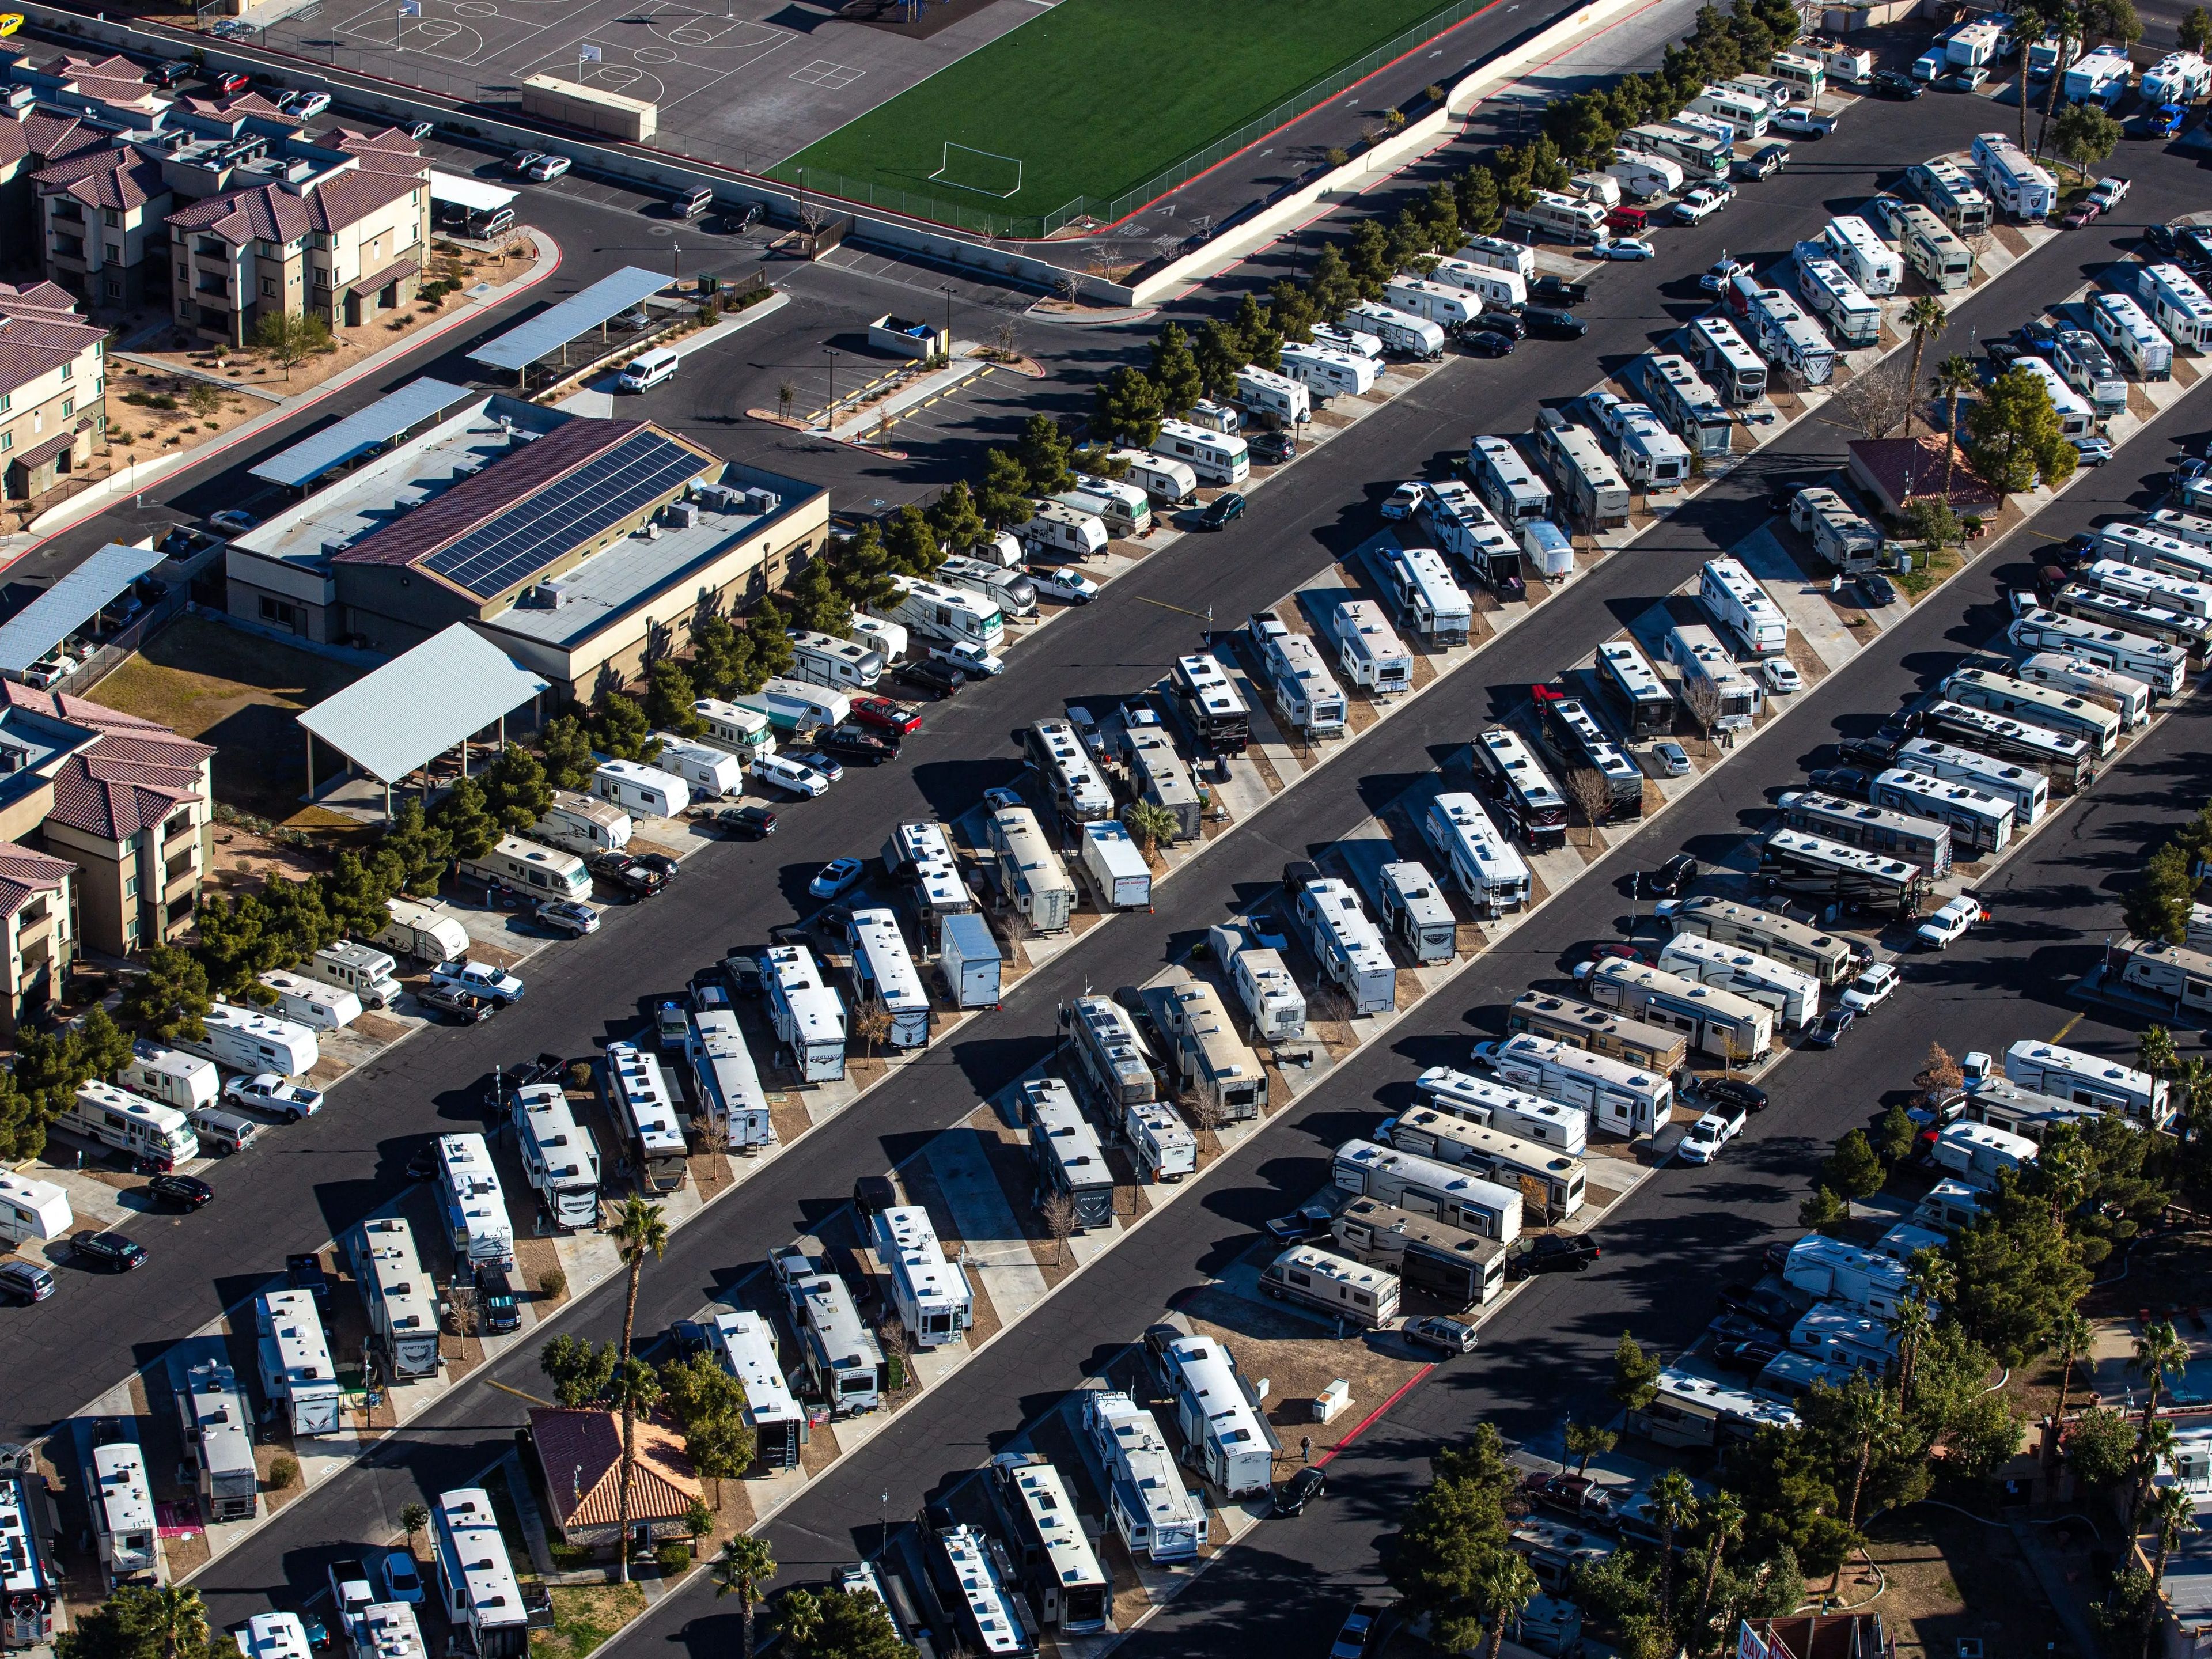 El parque de caravanas de lujo en el Aeropuerto Internacional de Ocala será el primero de su clase si se aprueban los planes.